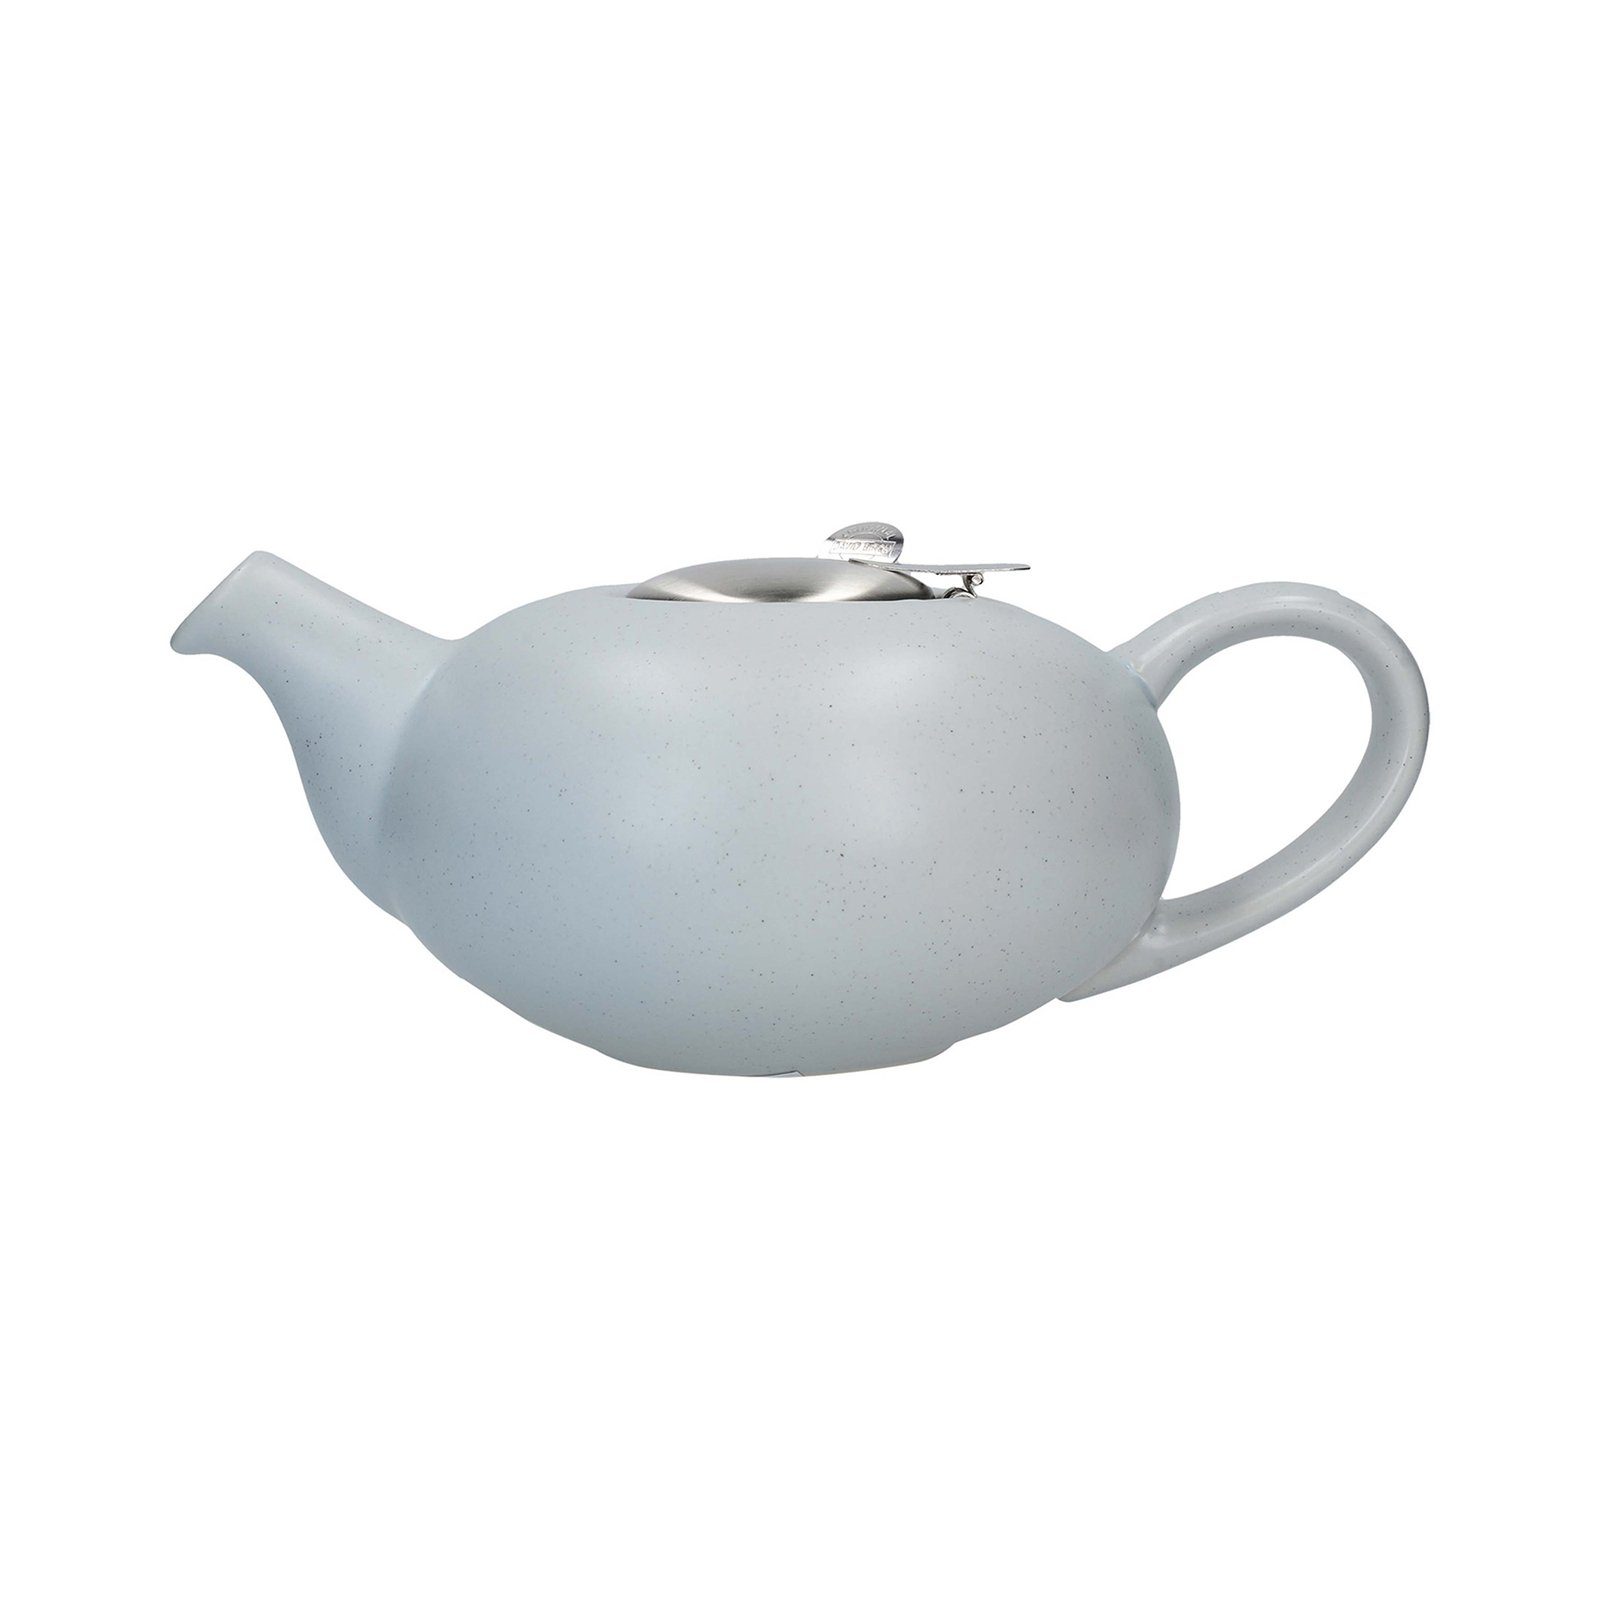 Neuetischkultur Teekanne »Teekanne mit Sieb, 4 Tassen 1 L, Keramik«, 1 l  online kaufen | OTTO